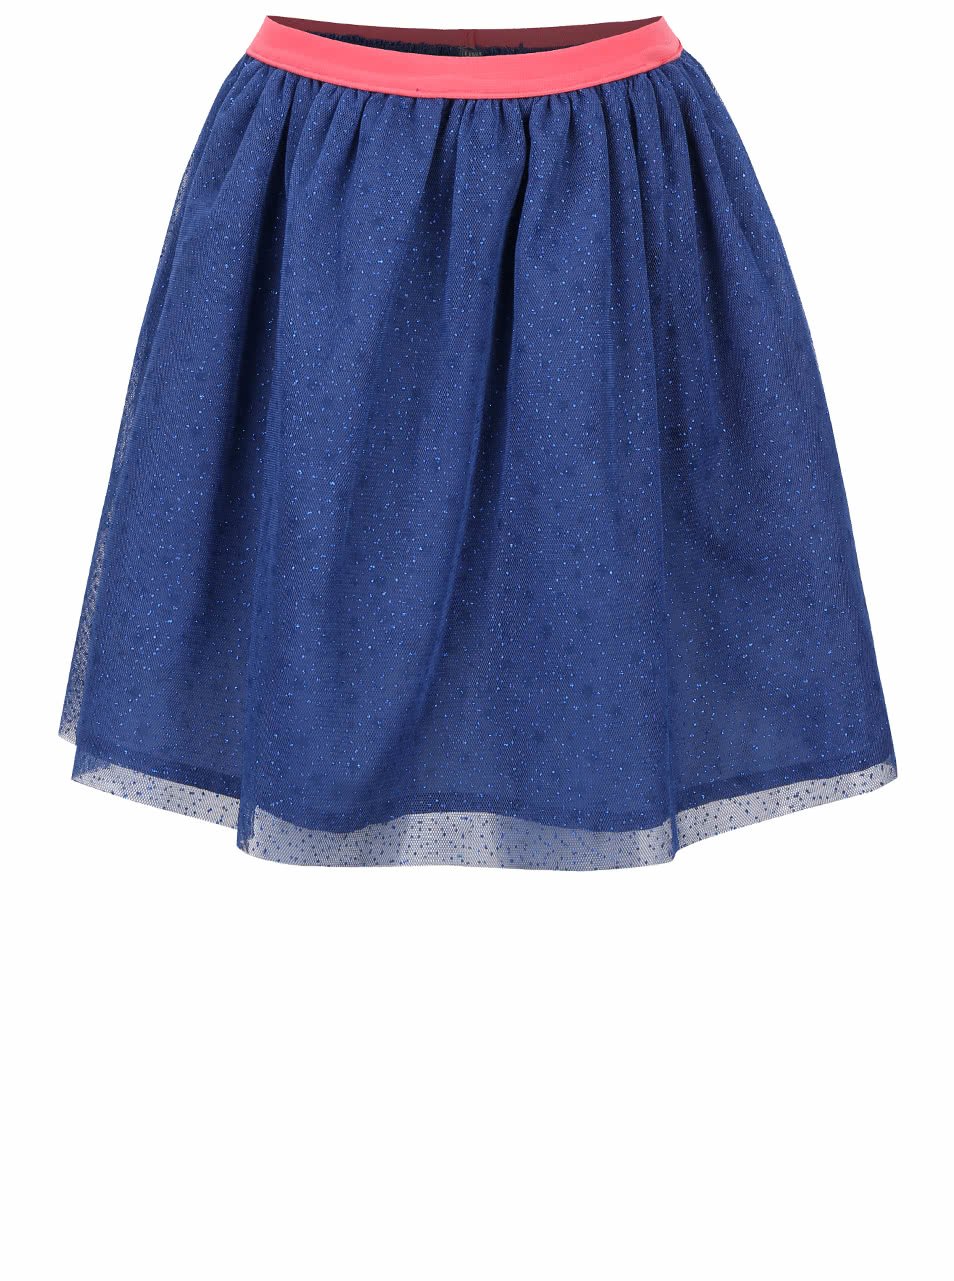 Tmavě modrá holčičí sukně s třpytivým vzorem 5.10.15.